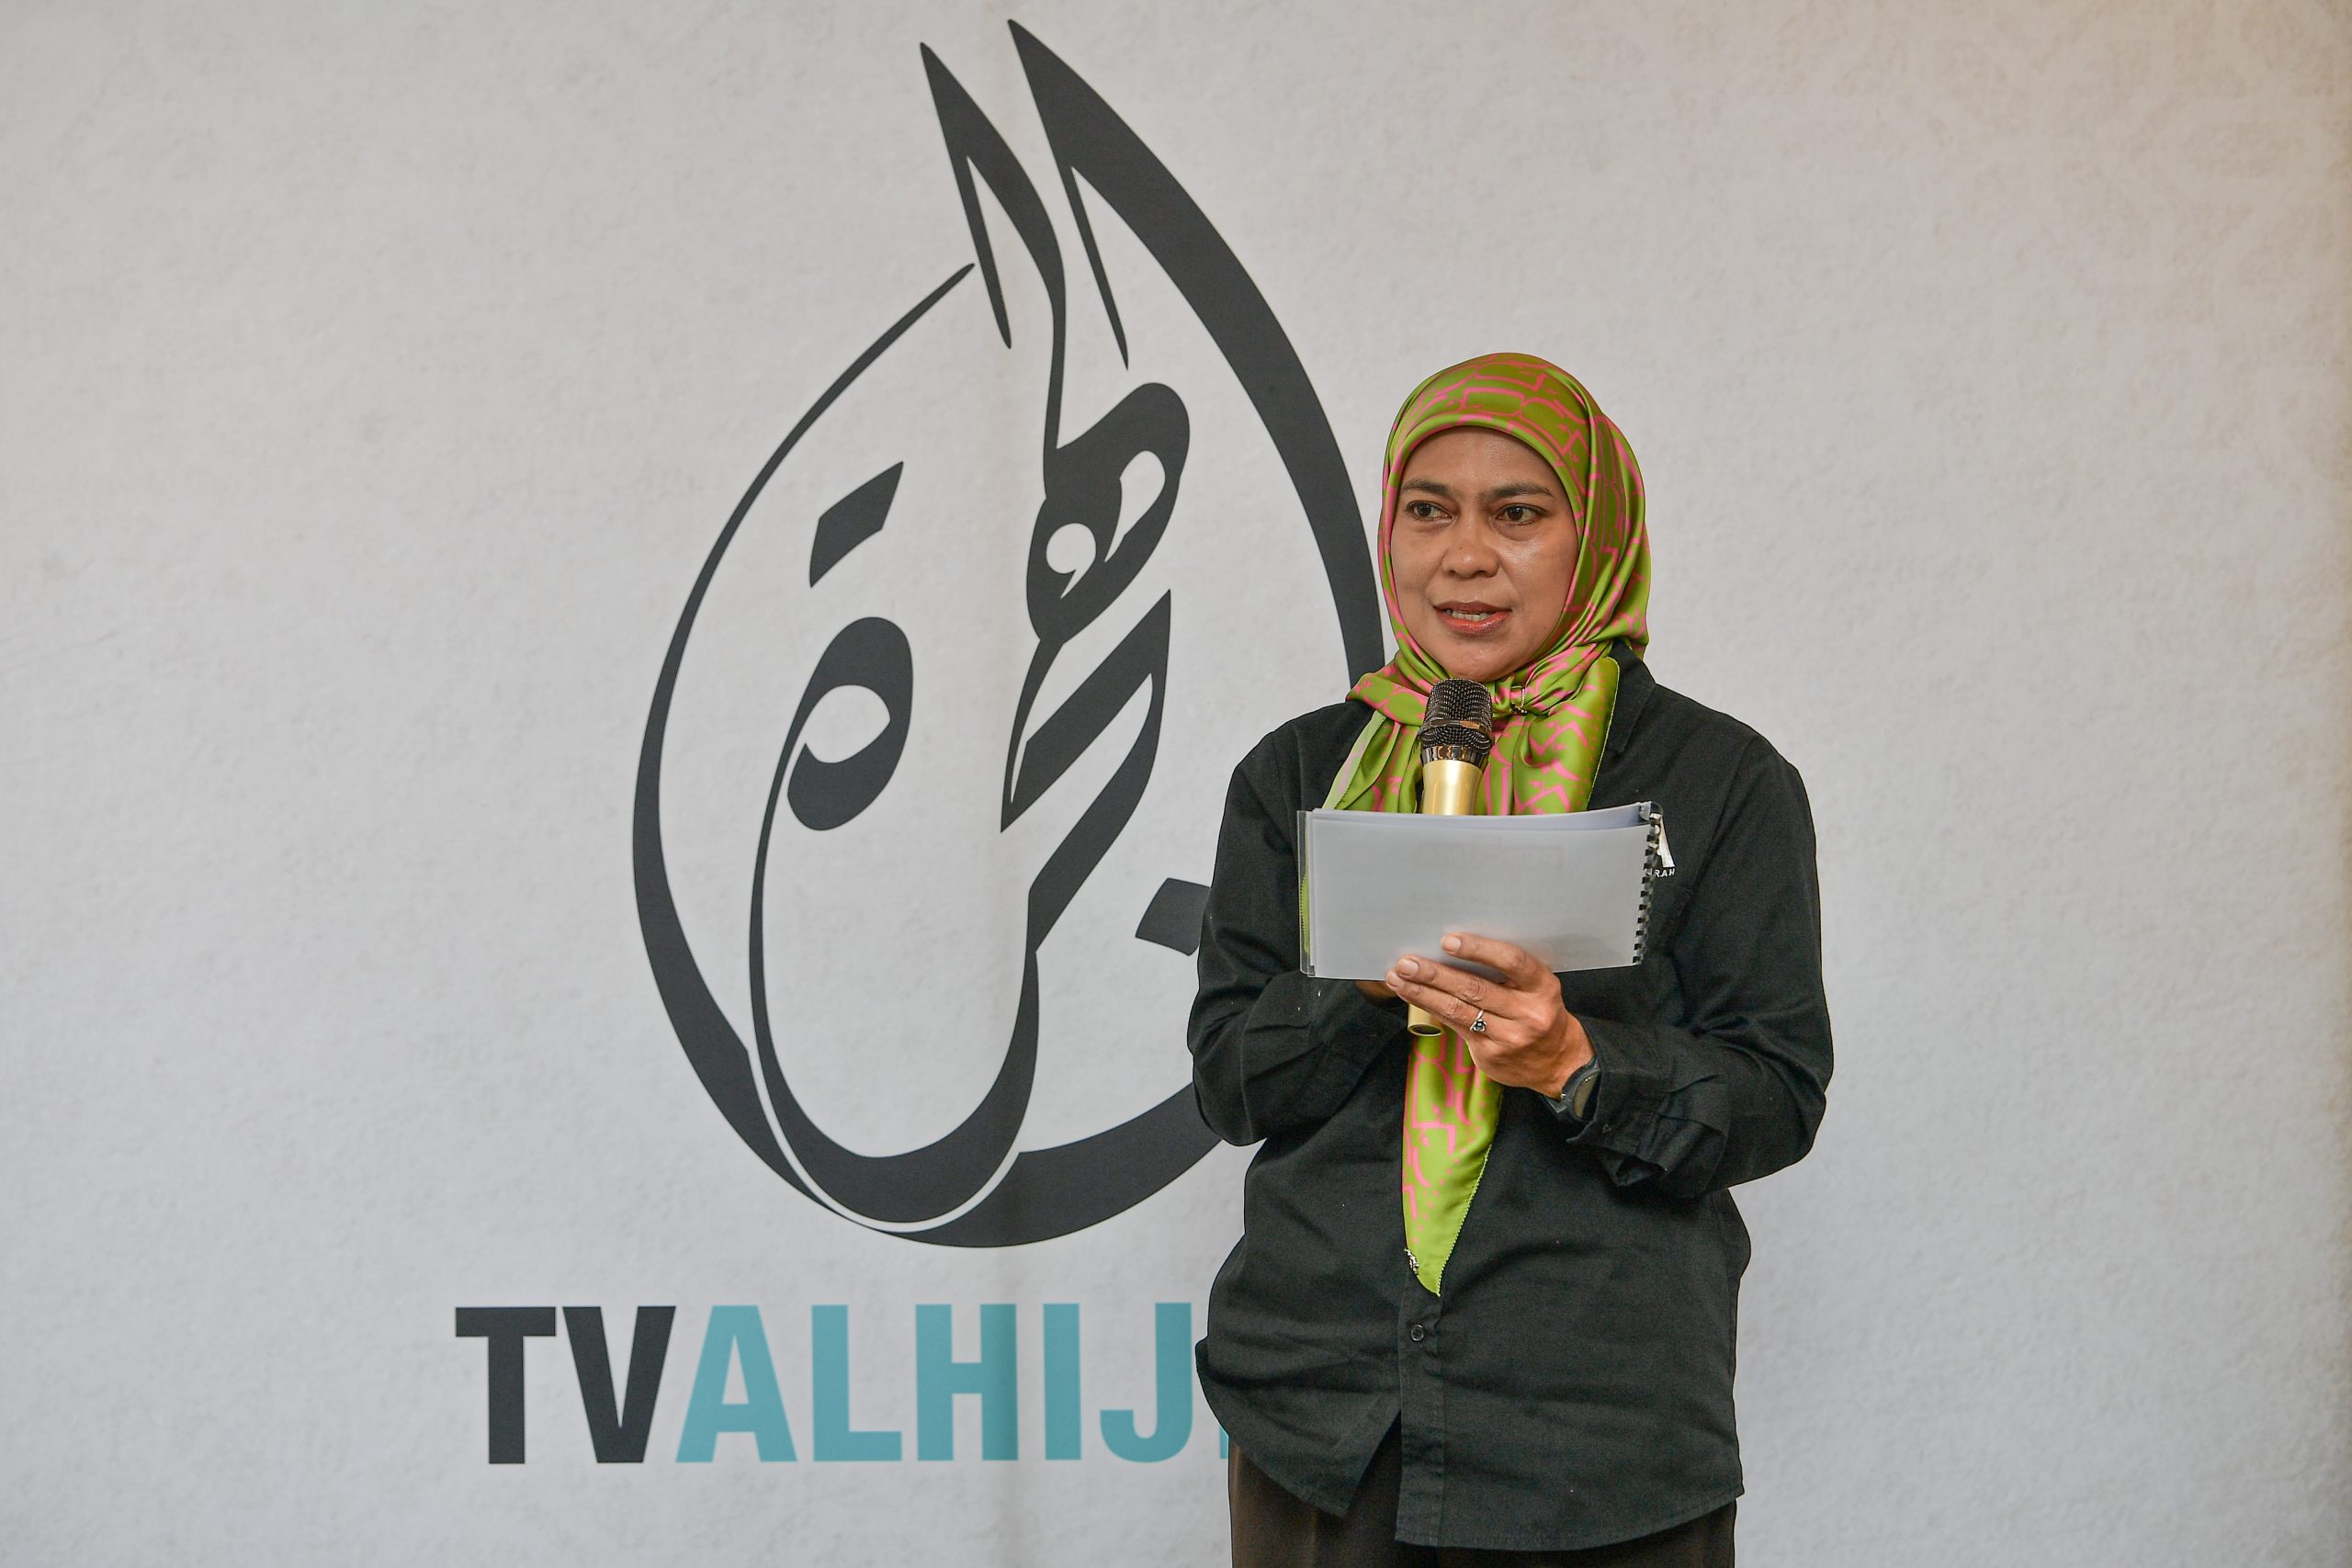 Dapat sampel barangan tanpa bayaran, TV AlHijrah perkenal program Percuma Jer! 9